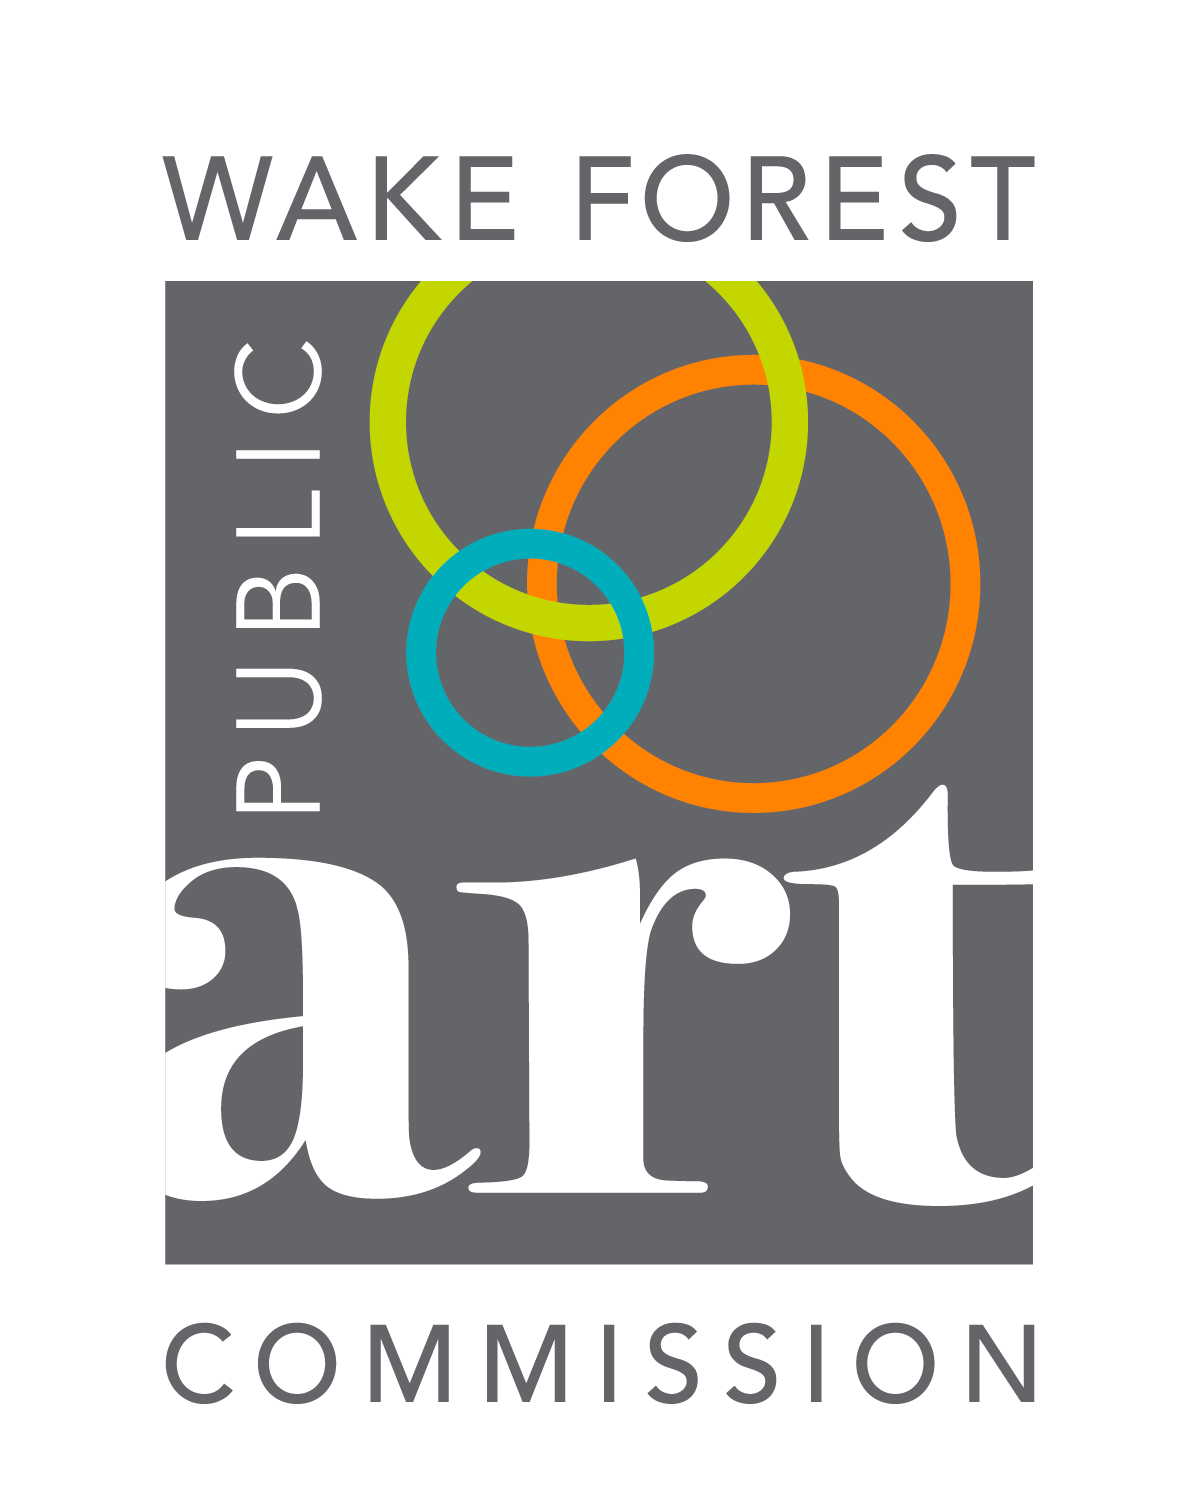 Public Art Commission